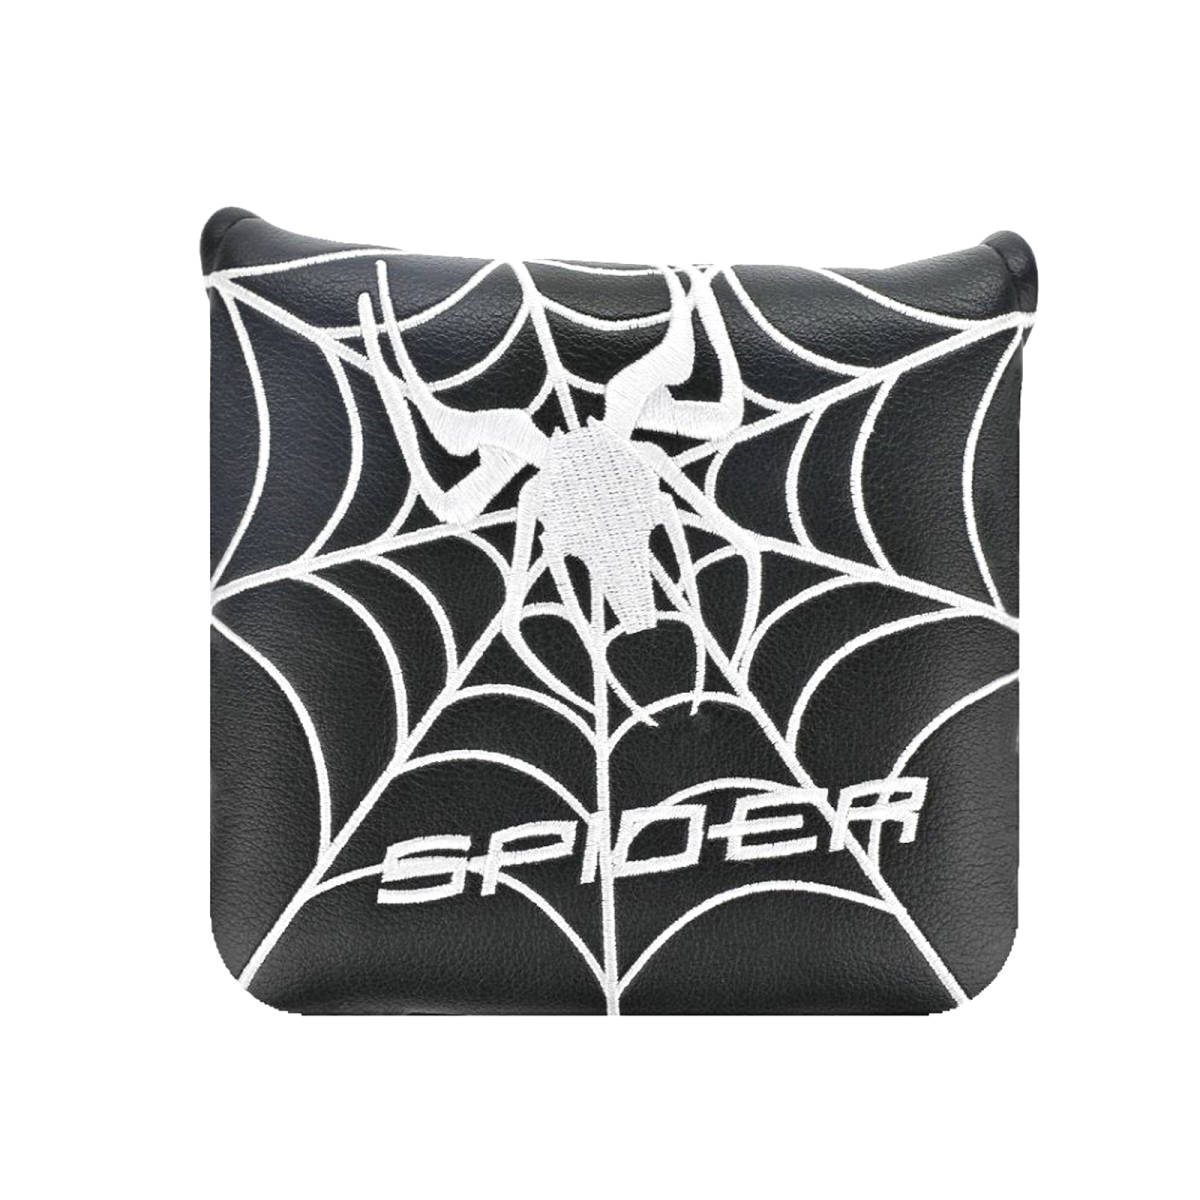 ゴルフヘッドカバー パターカバー マレット用 テーラーメイド スパイダーパターに対応 マグネット式 Spider 4色_画像4